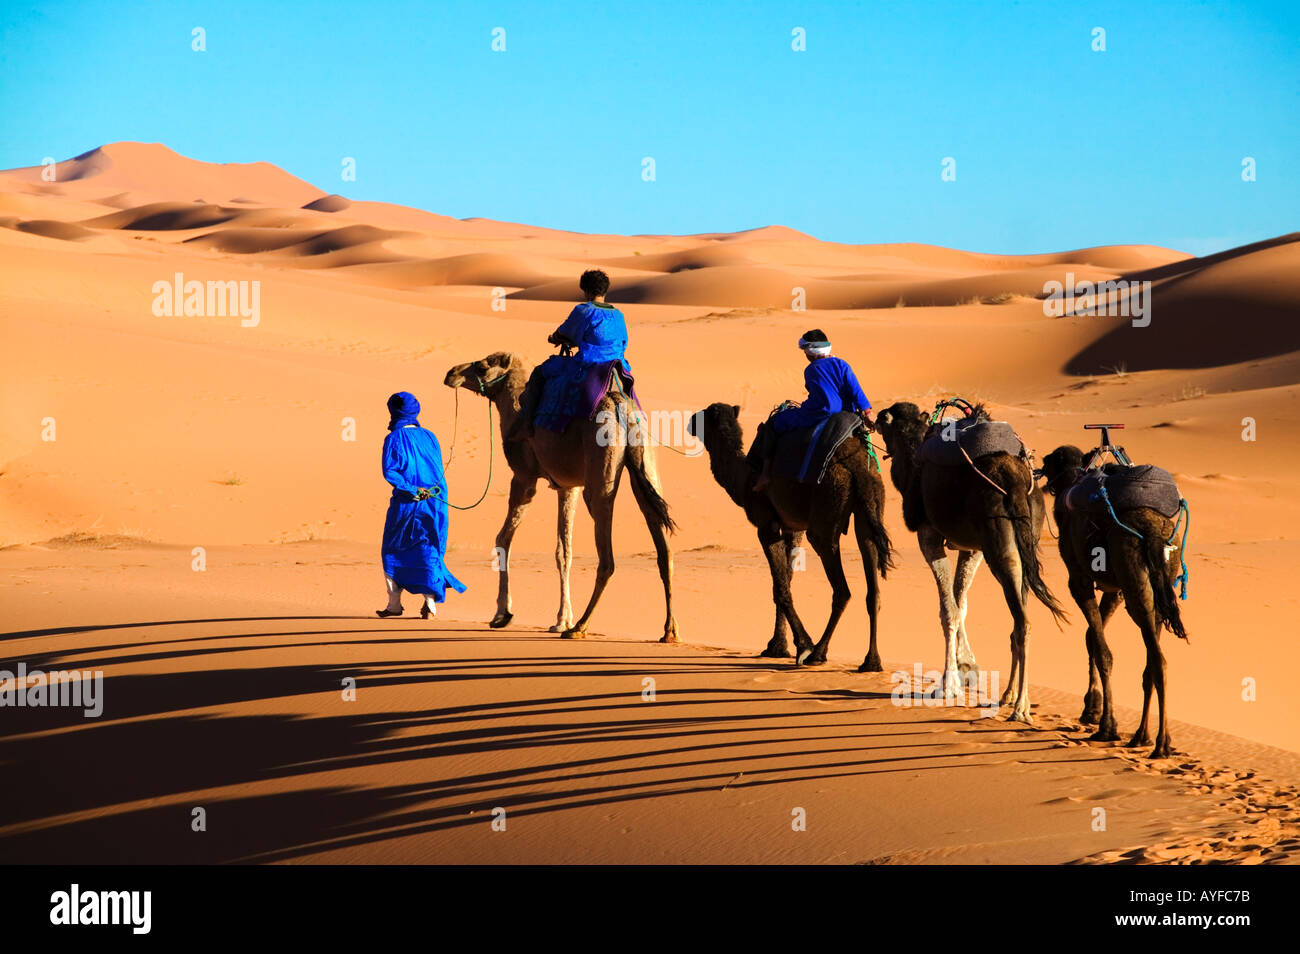 Tuareg-Mann und seine Kinder in traditionellen blauen Gewand gekleidet mit Kamelen in der Wüste Erg Chebbi Bereich Sahara Marokko Stockfoto